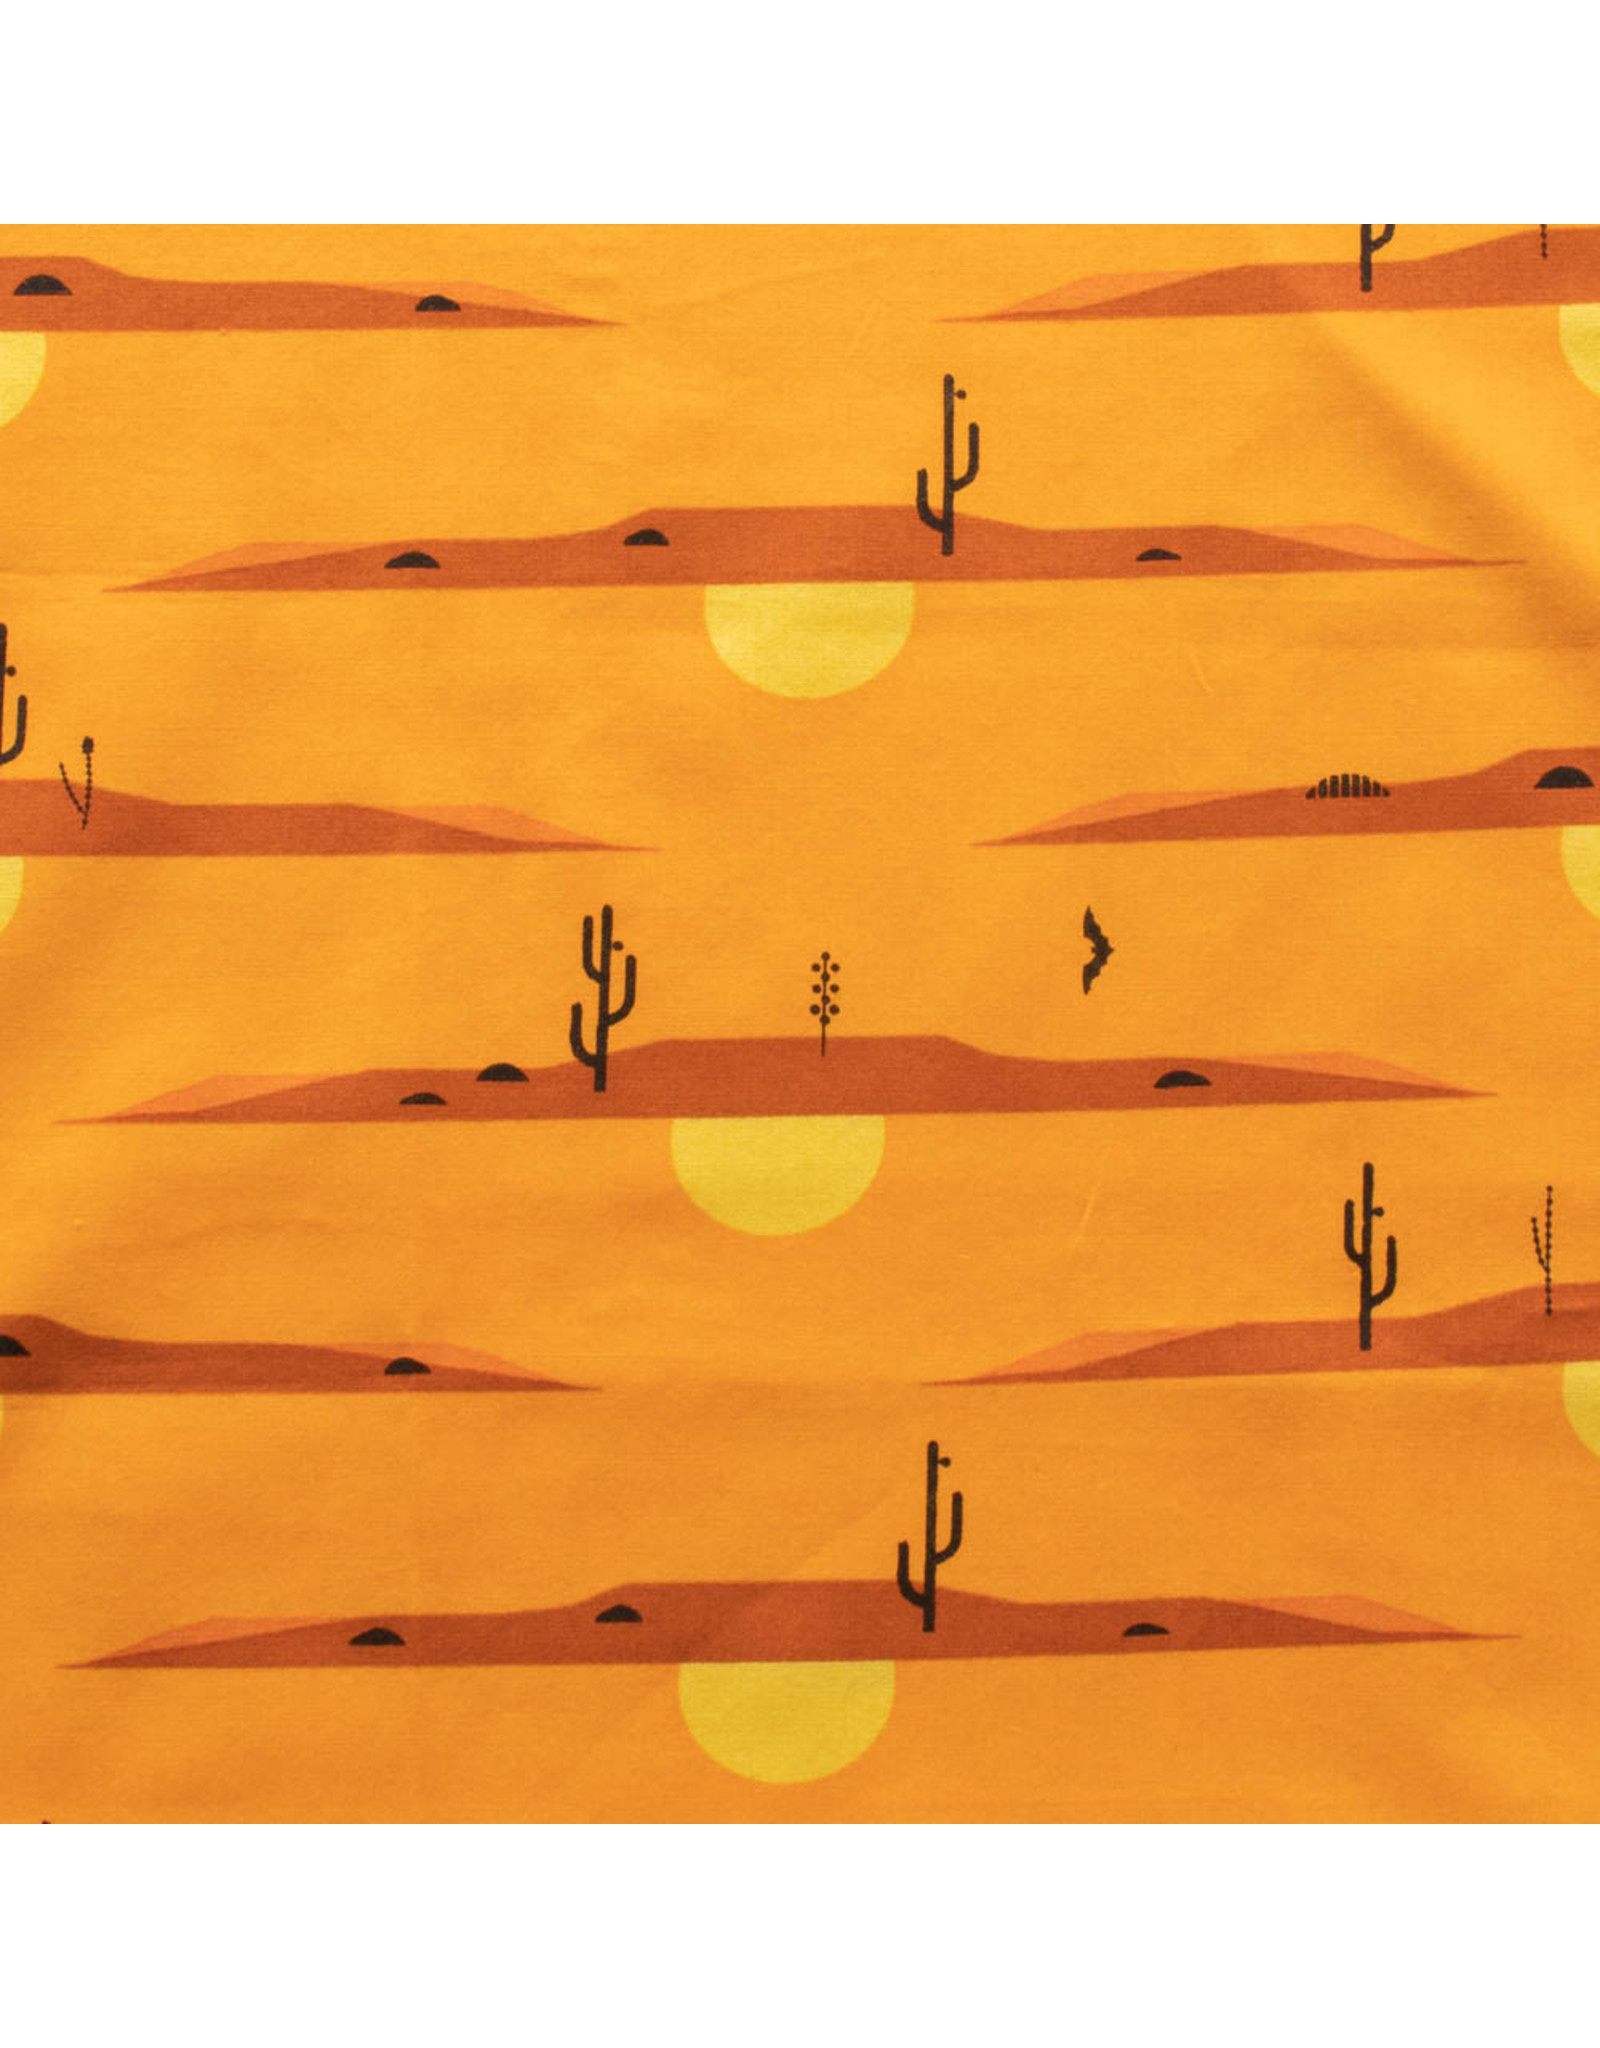 Birch Fabrics Charley Harper - The Desert - Desert at Dusk - CH-215